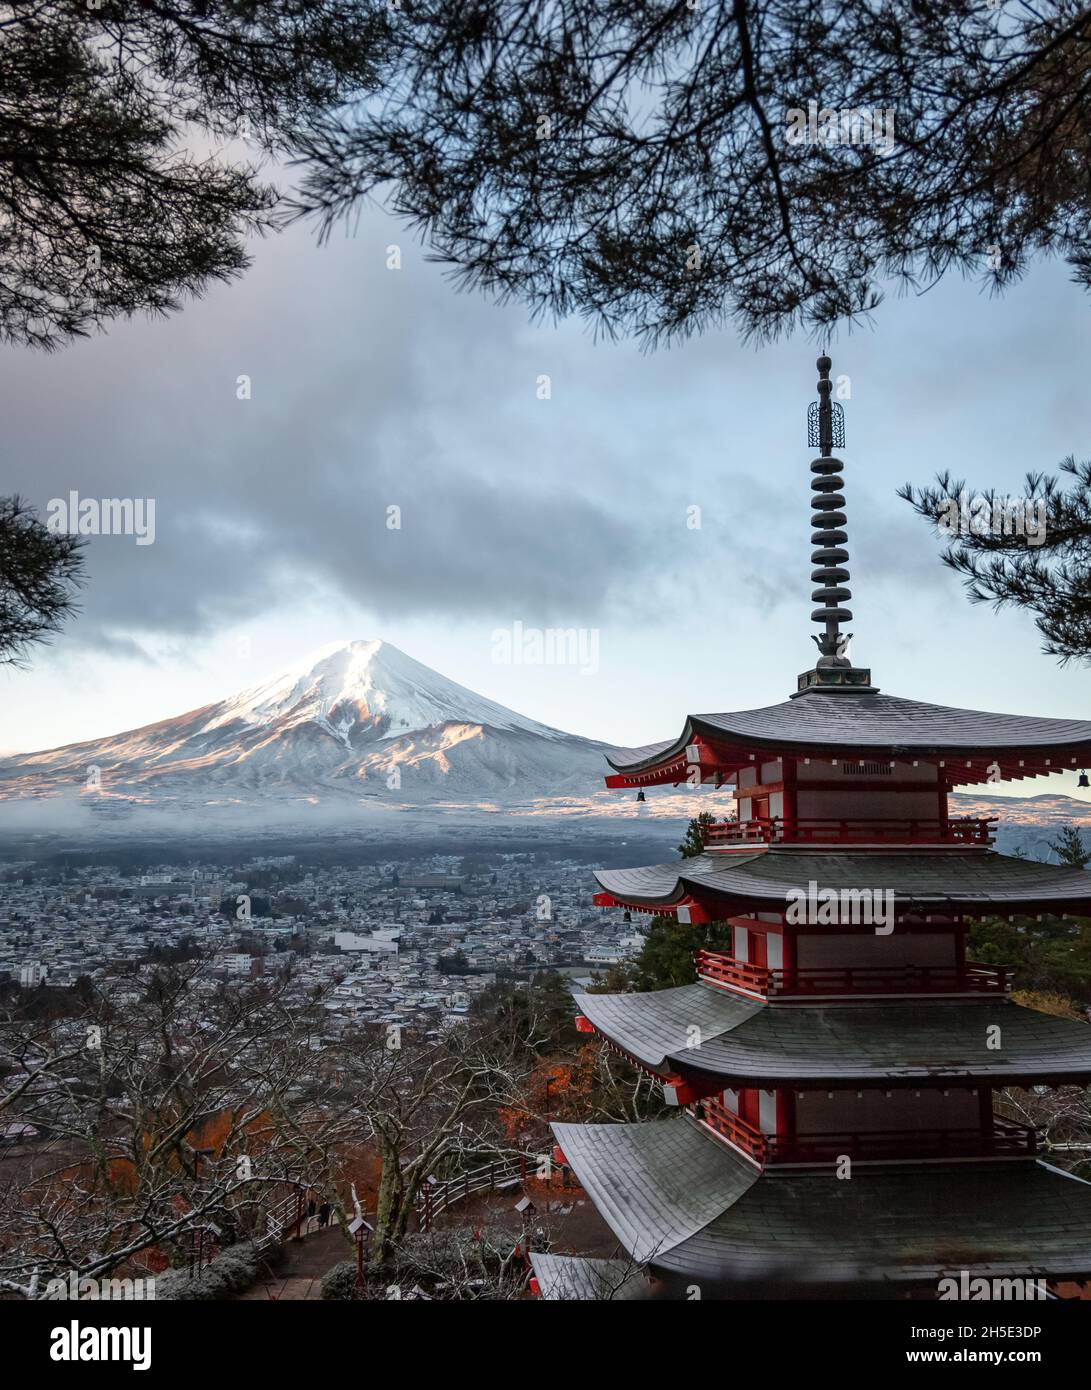 Mt. Fuji from Shimoyoshida - Arakurayama Sengen Park in Fujiyoshida Stock Photo